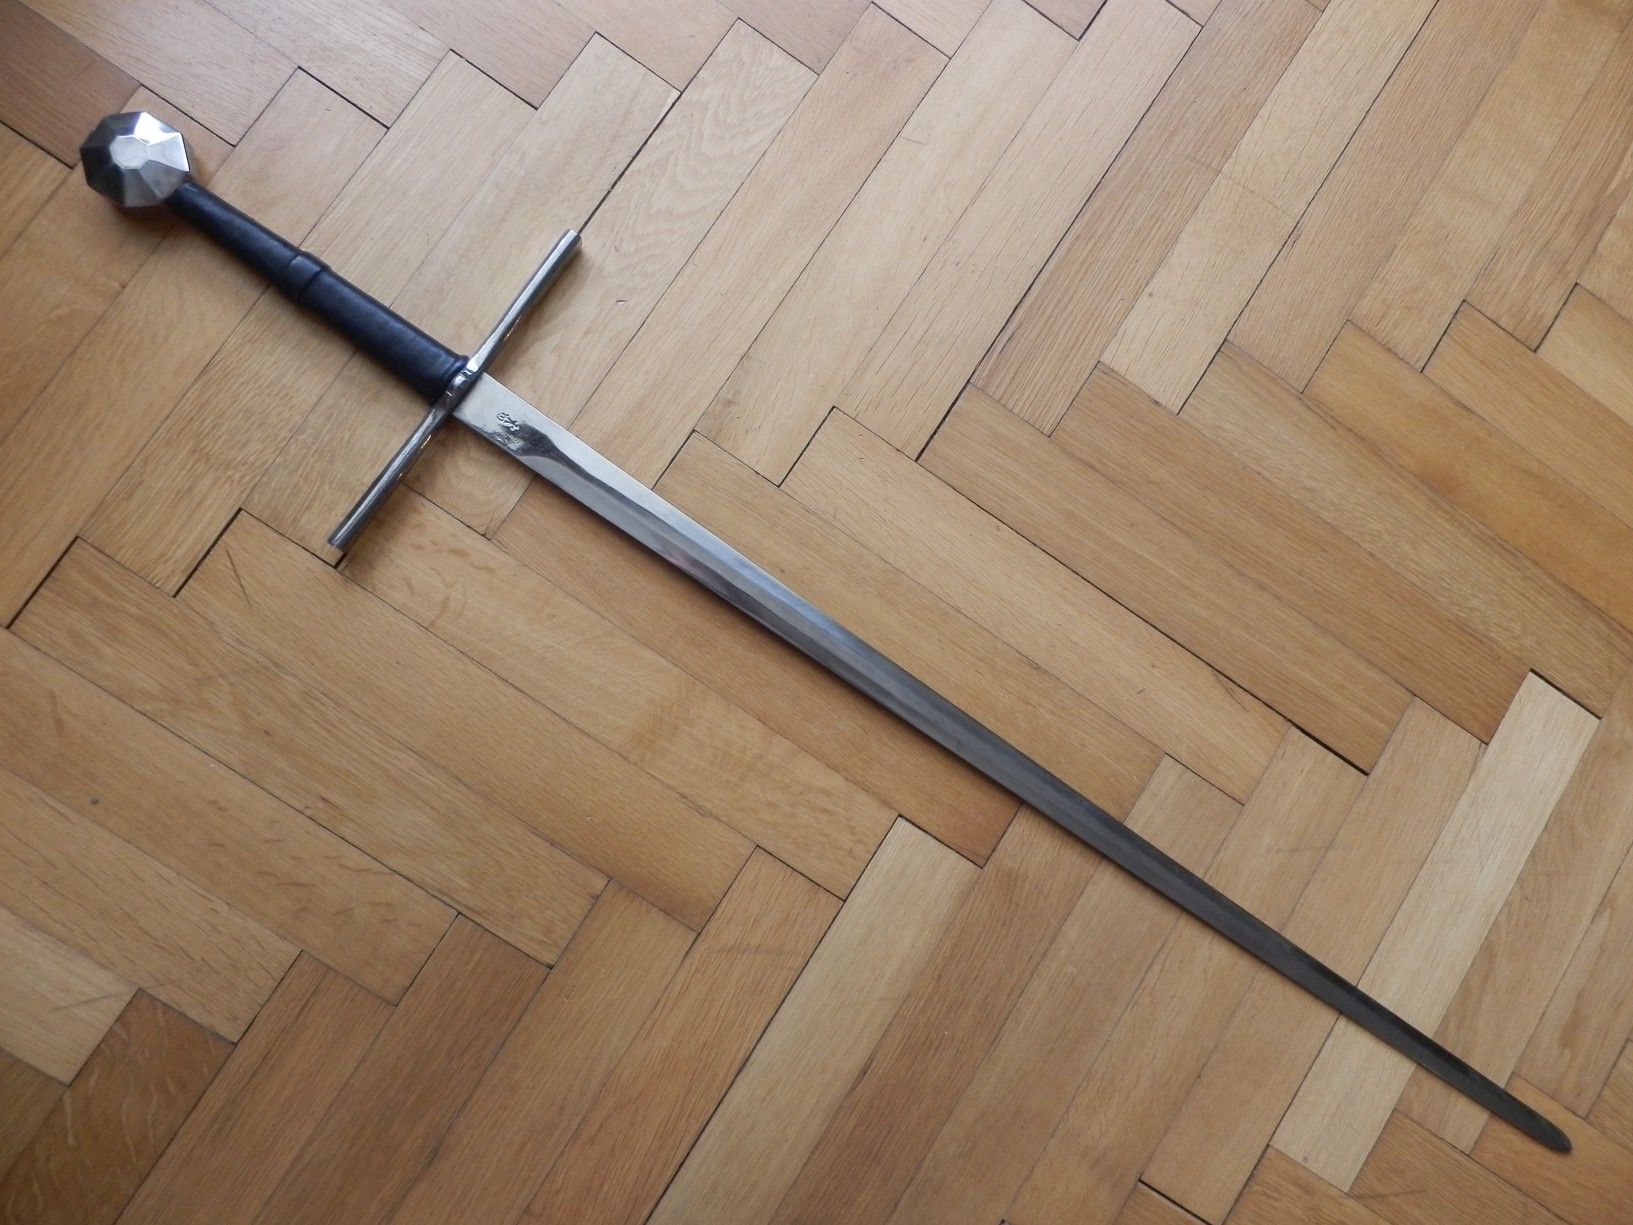 欧洲长剑长度图片